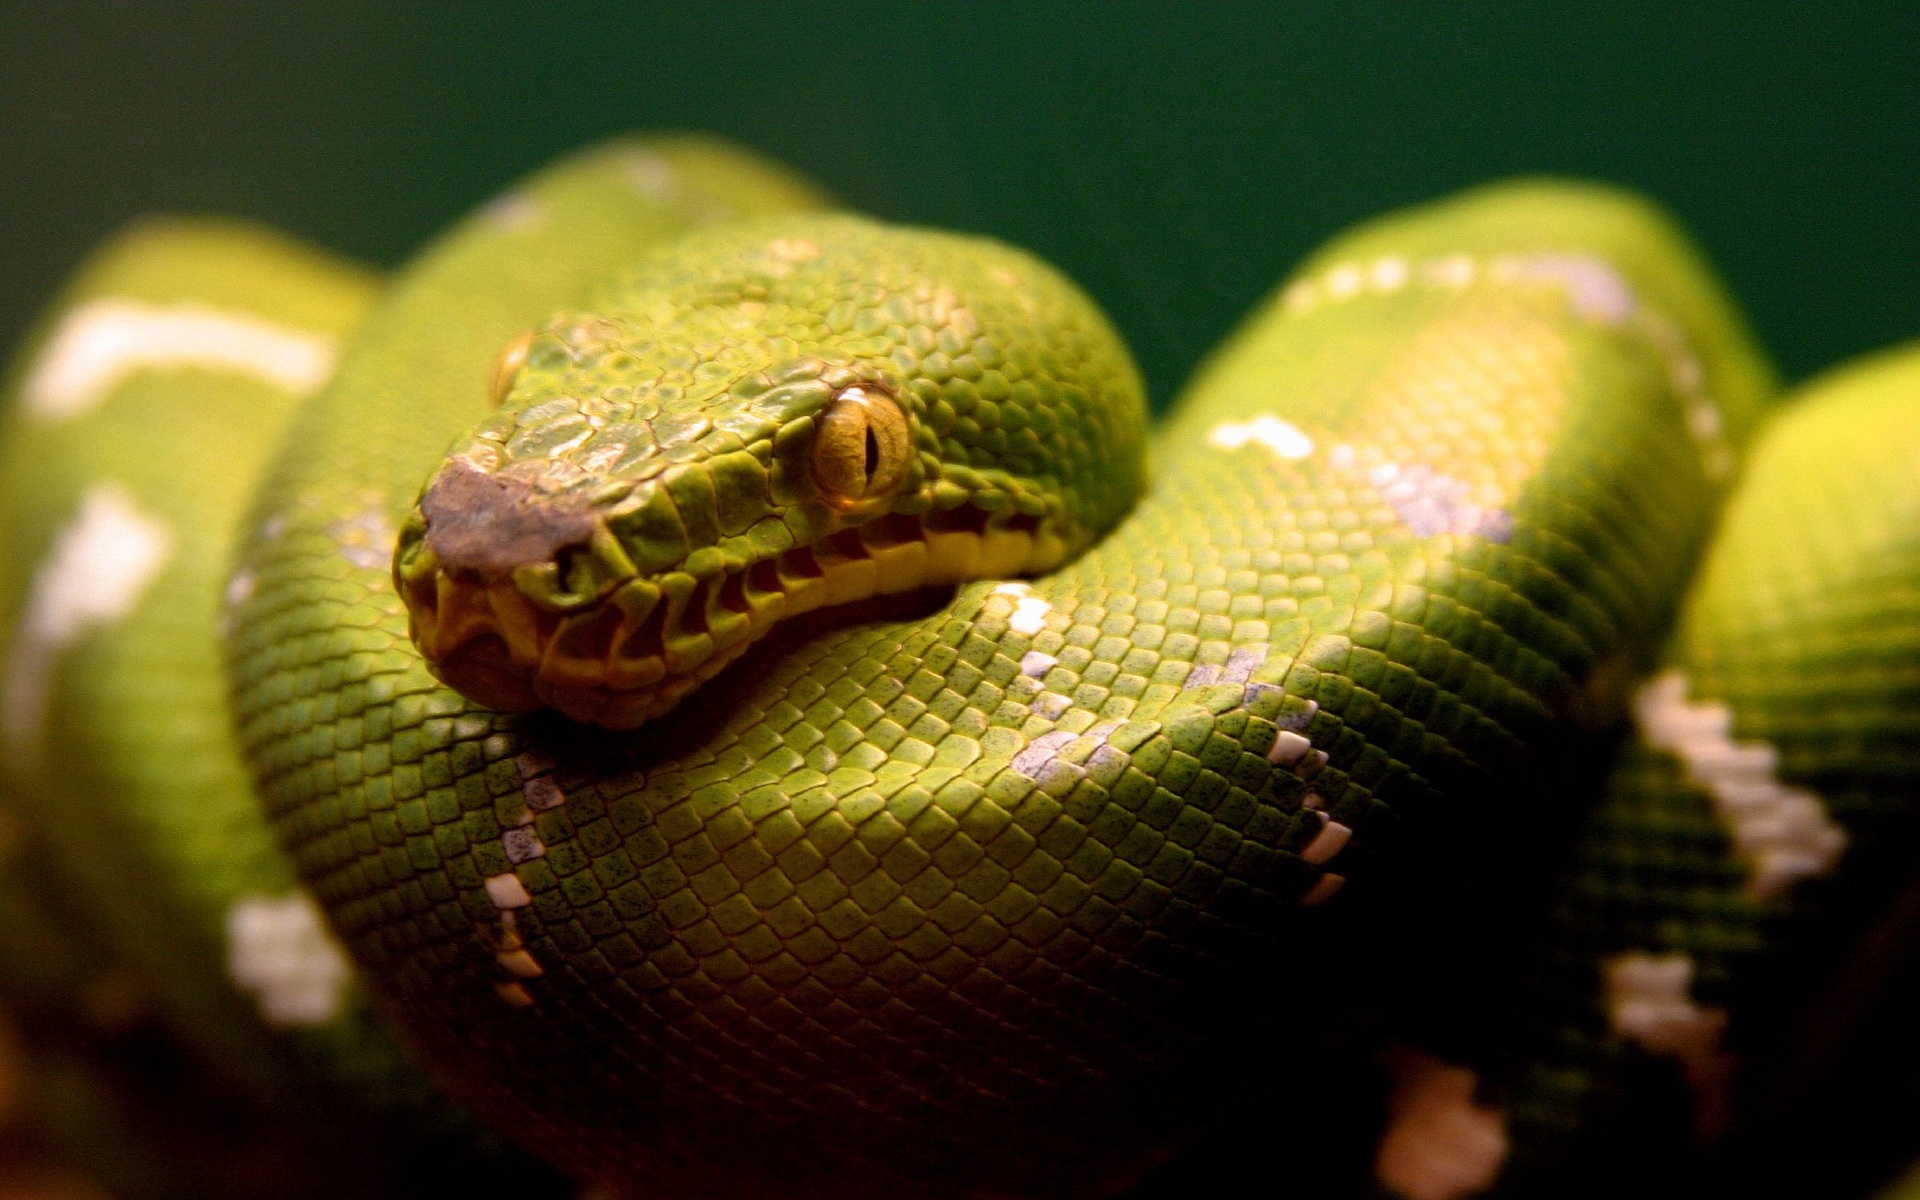 A Green Snake4522811152 - A Green Snake - Snake, King, green